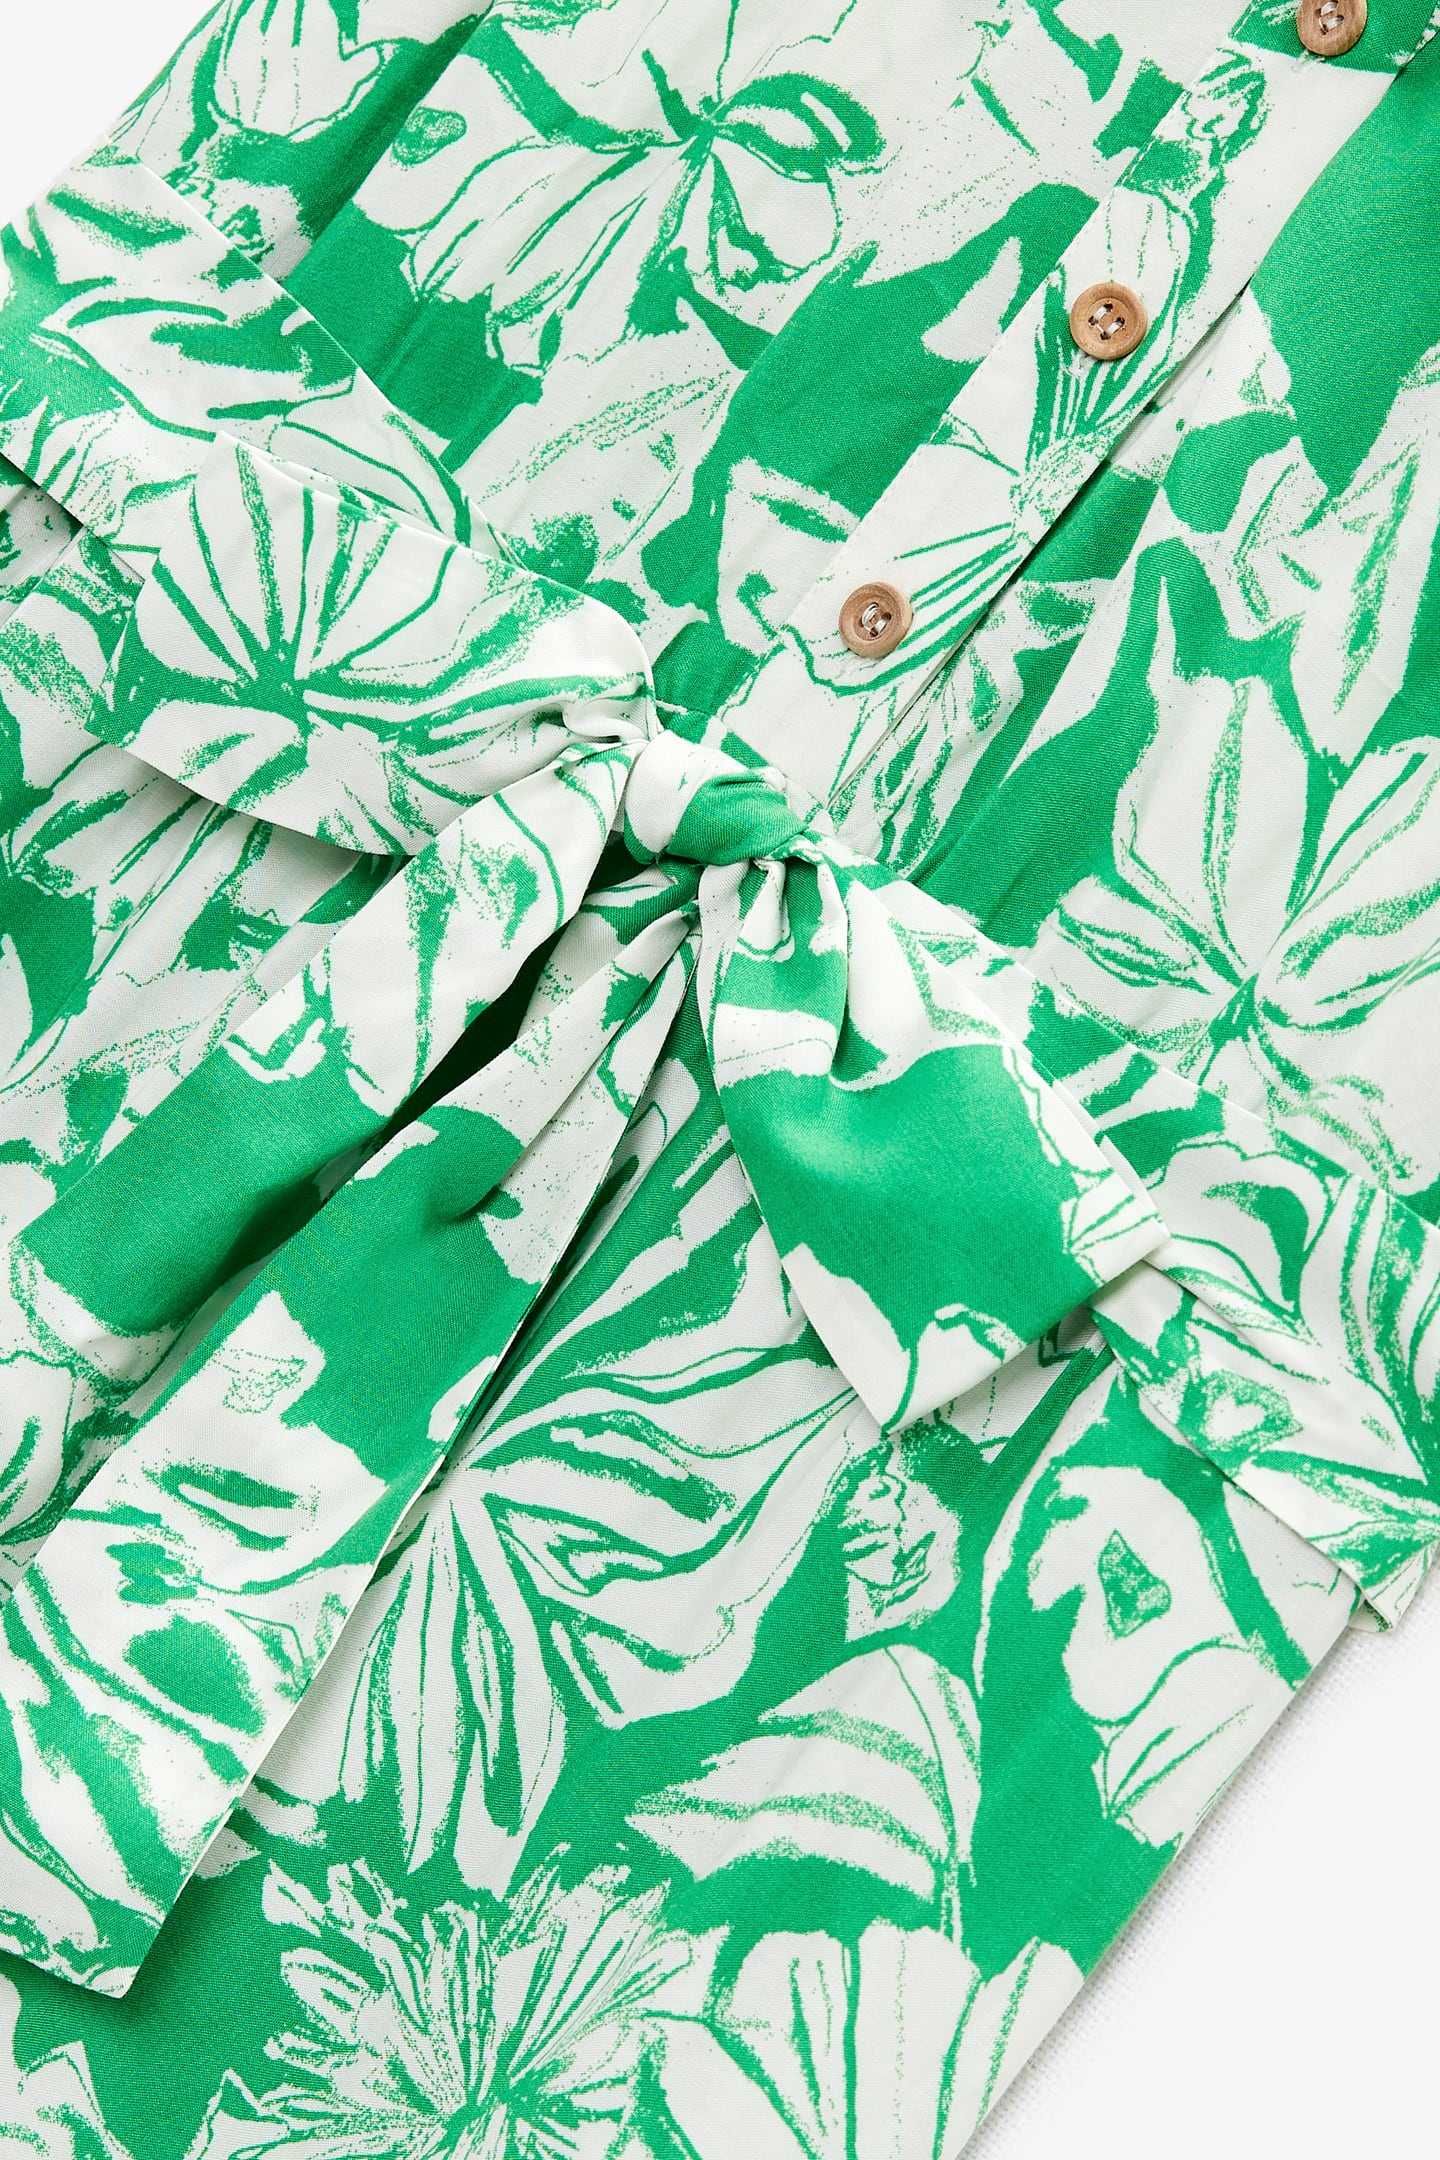 NOWA 40 L ZARA sukienka 100% wiskoza zielona wielokolorowa print